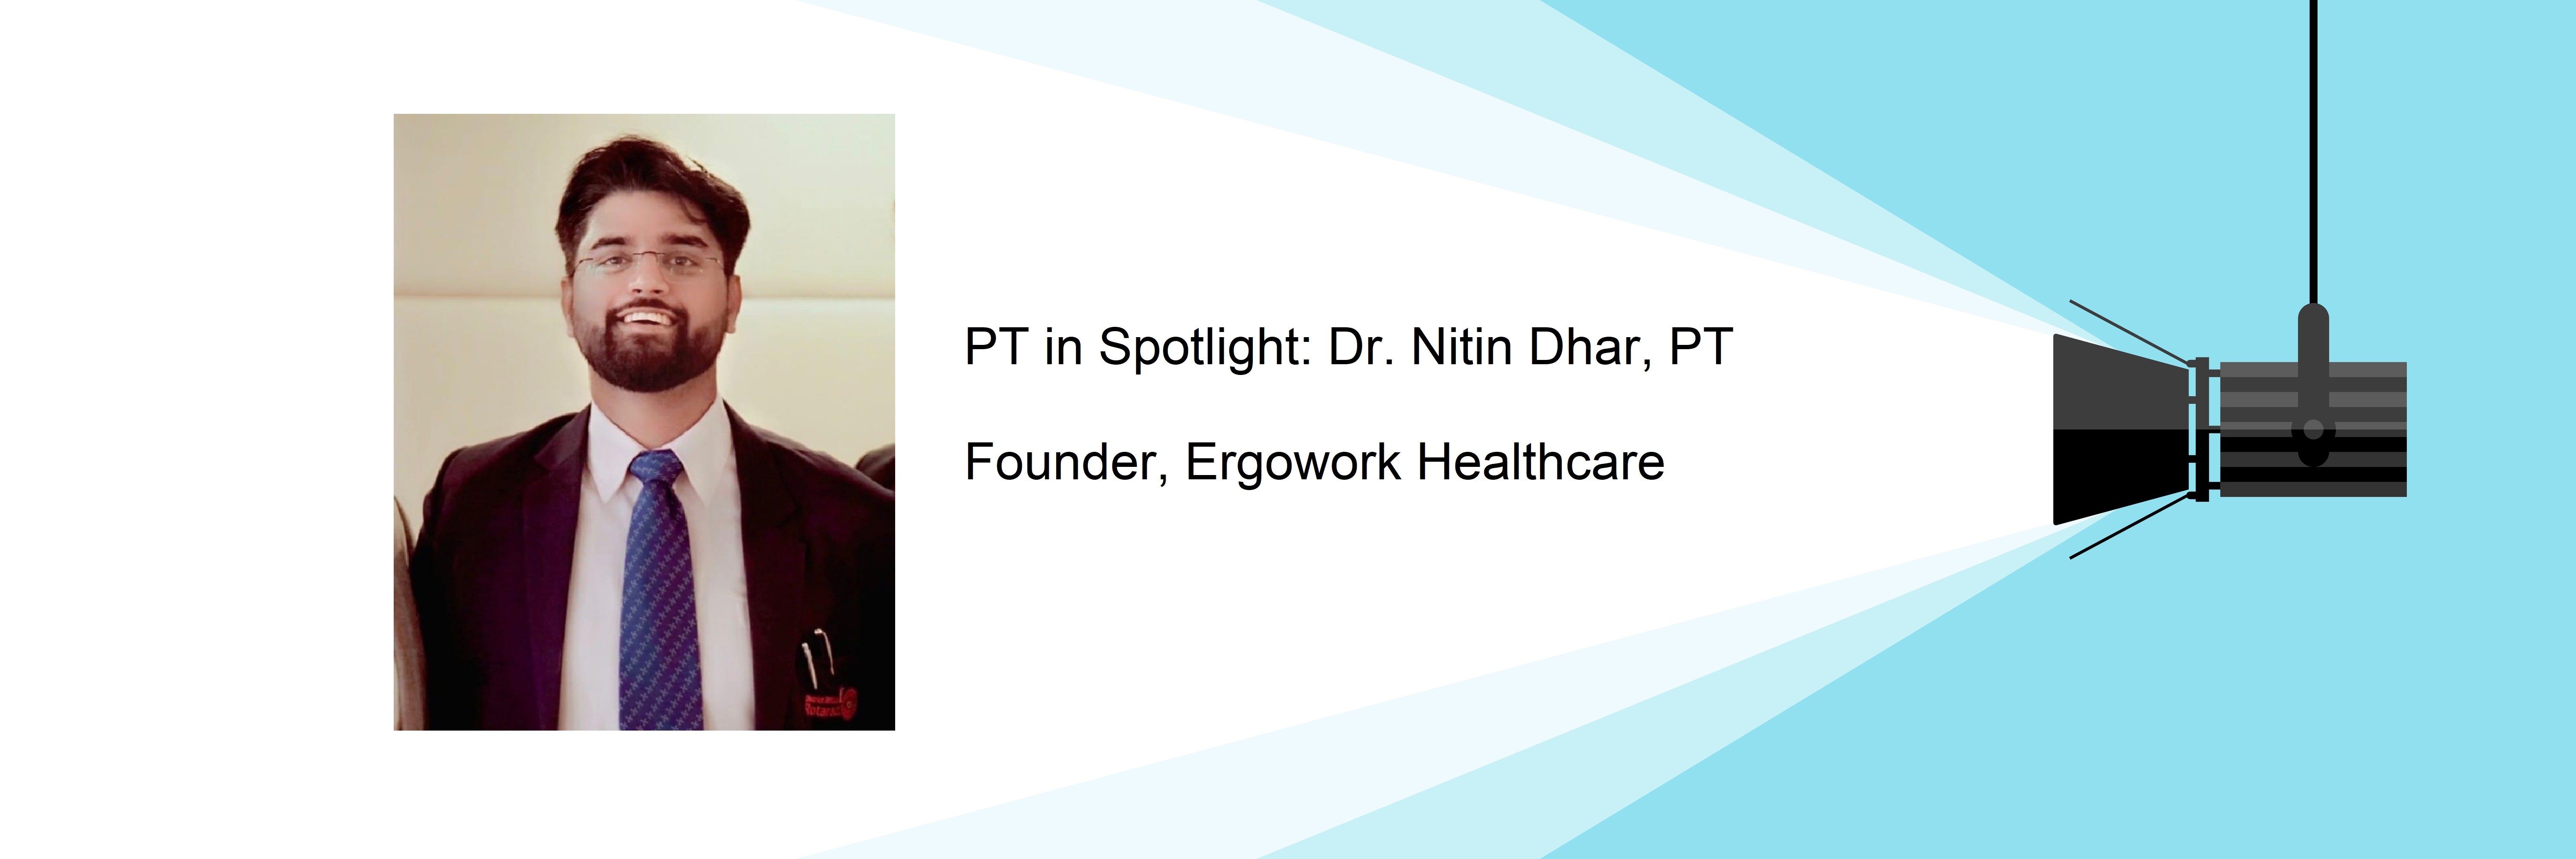 Nitin Dhar, Founder Ergowork Healthcare, PT in Spotlight